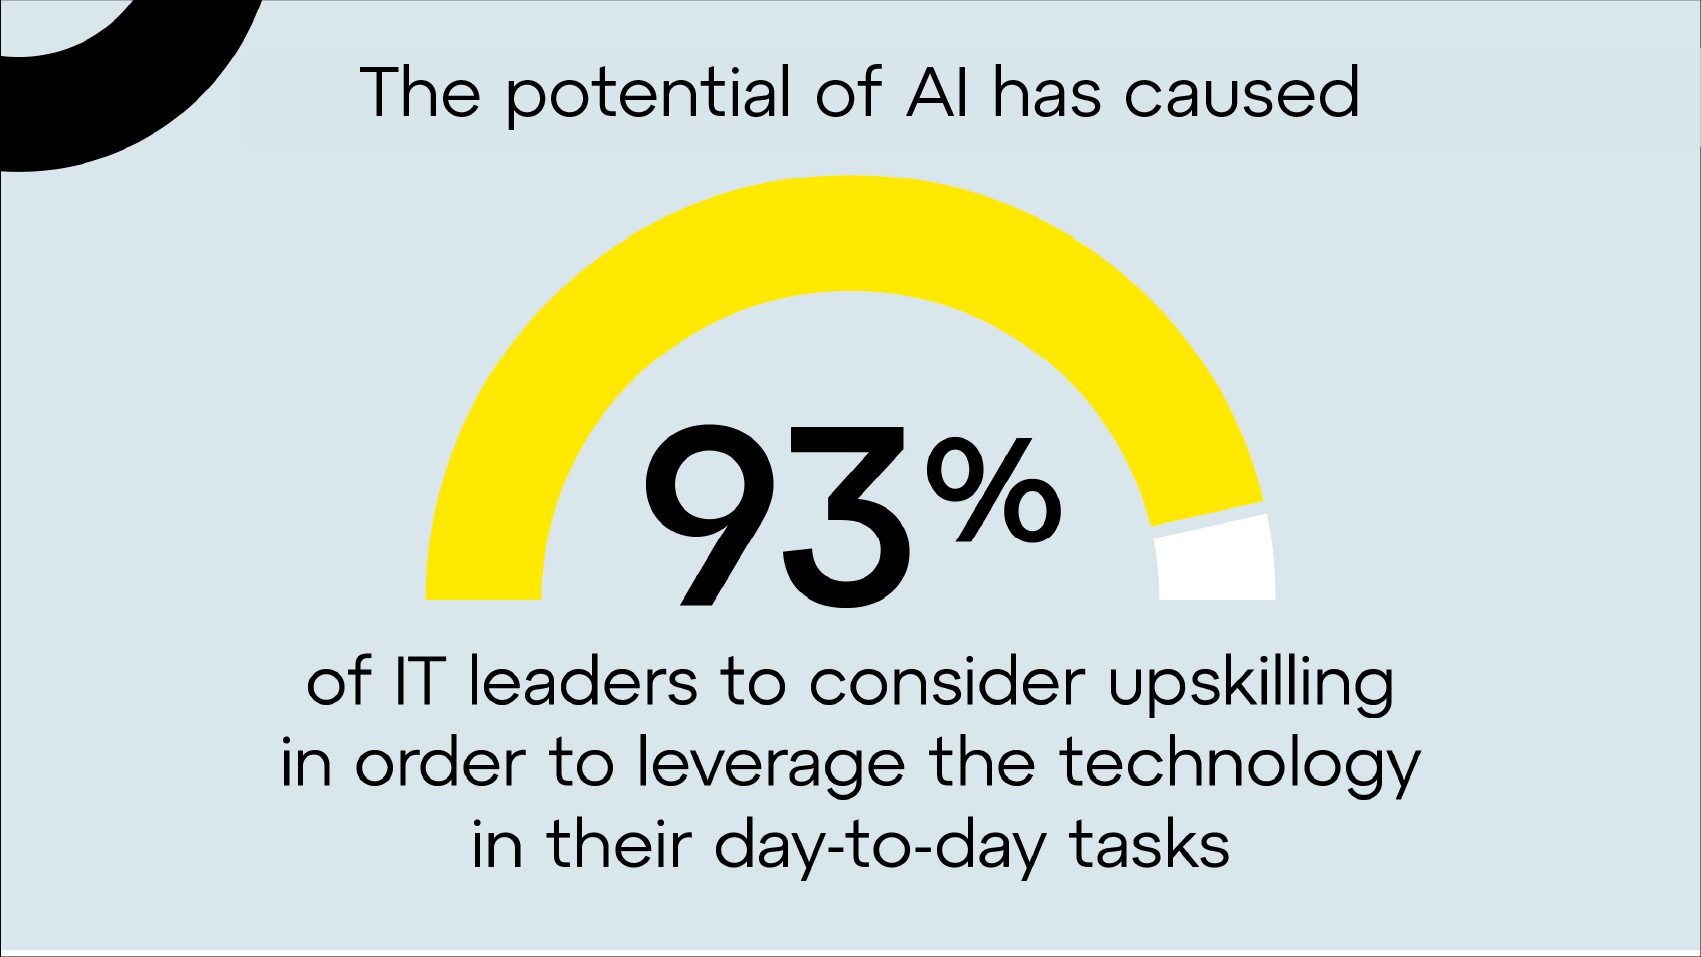 Le potentiel de l'IA a incité 93 % des dirigeants de l'informatique à monter en compétences afin de tirer parti de la technologie dans leurs tâches quotidiennes.